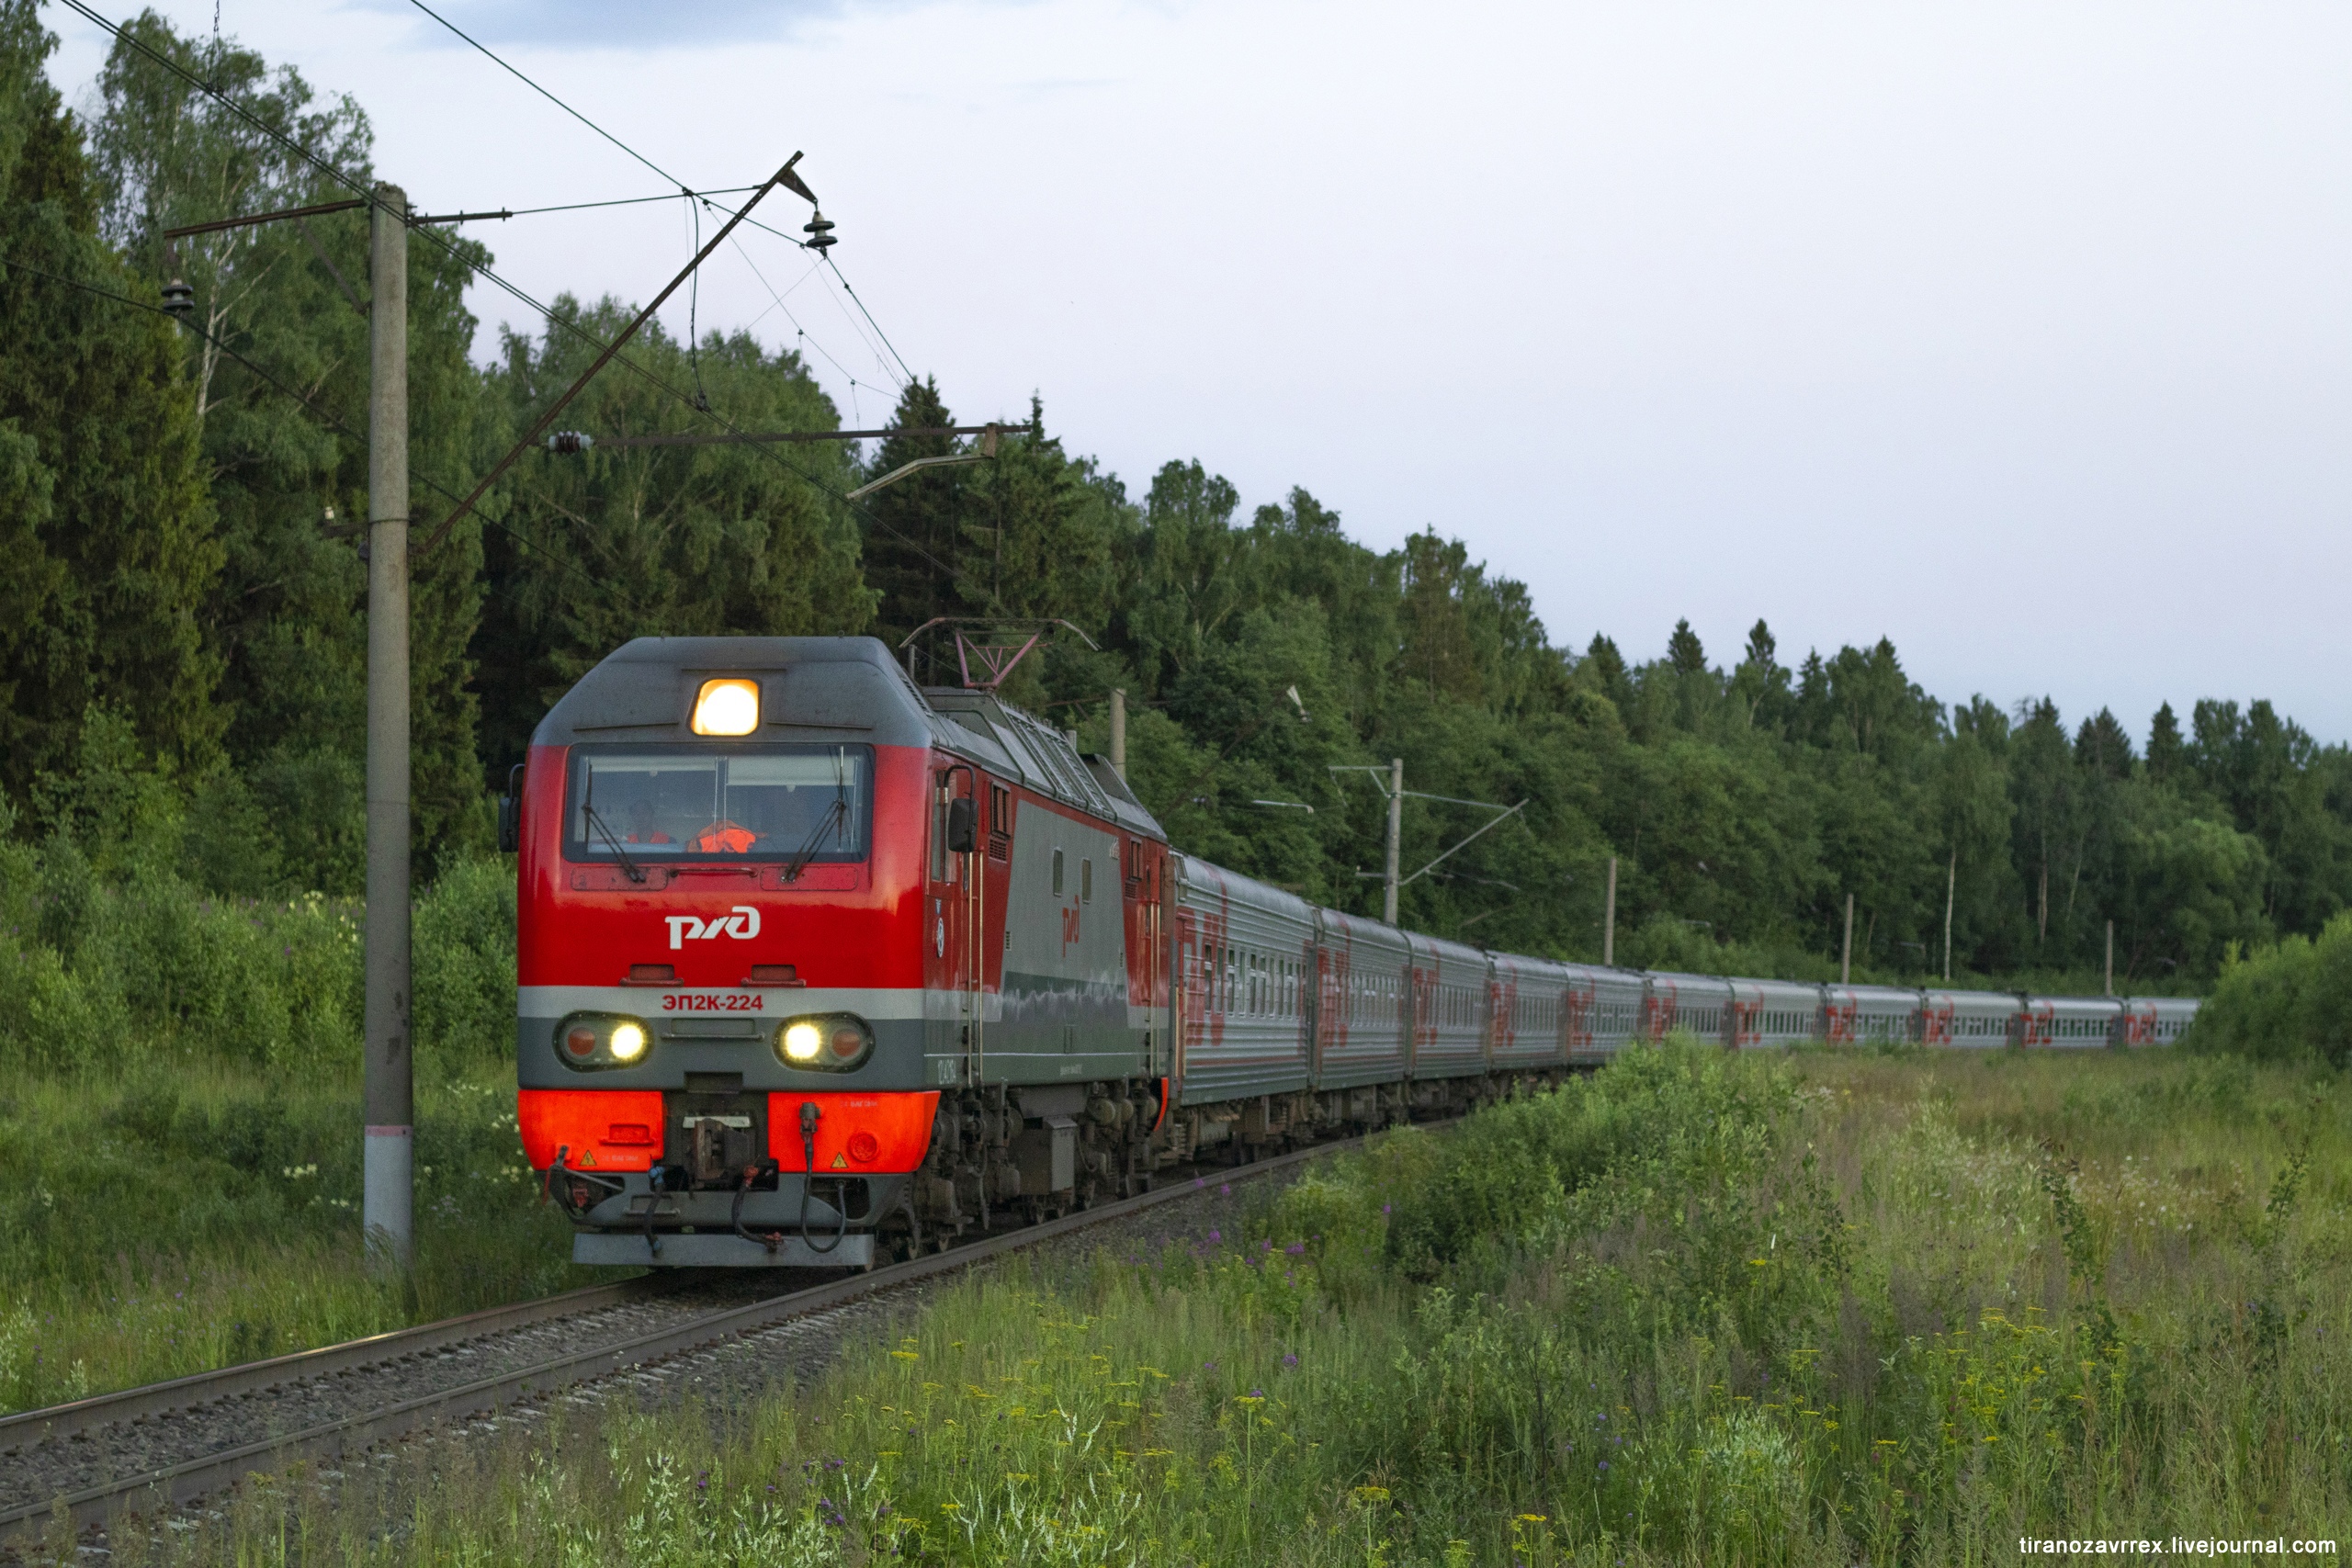 Trans-Siberian railway tour